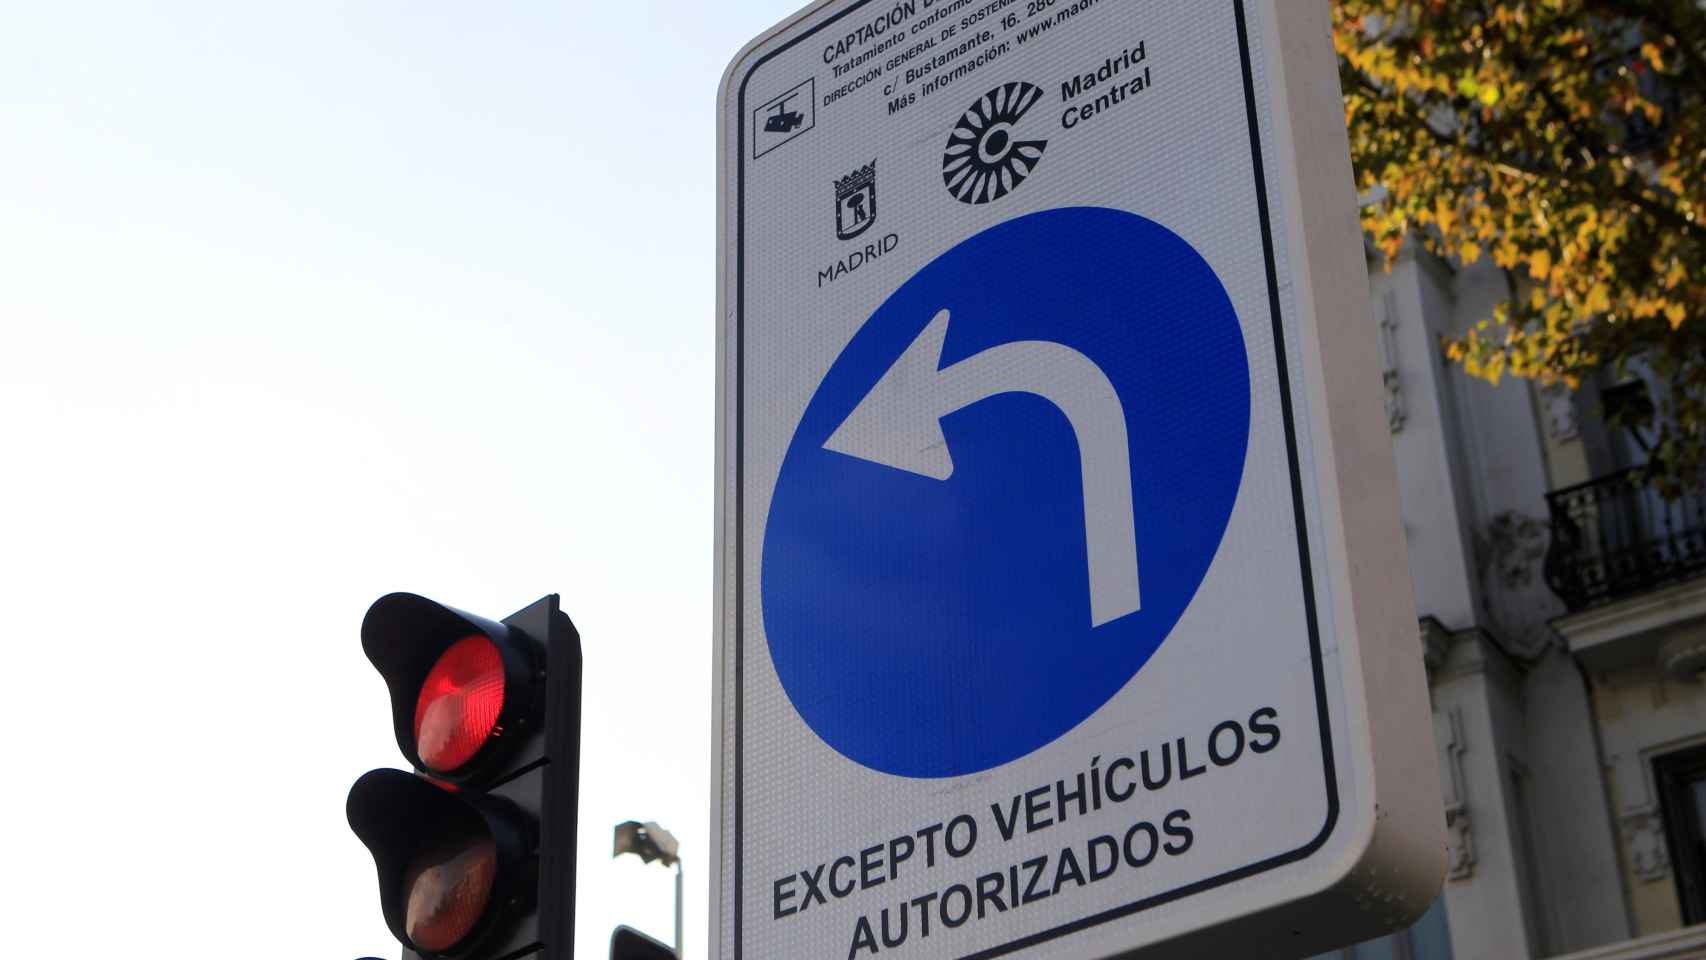 Restricciones de tráfico con la entrada en vigor de Madrid Central.